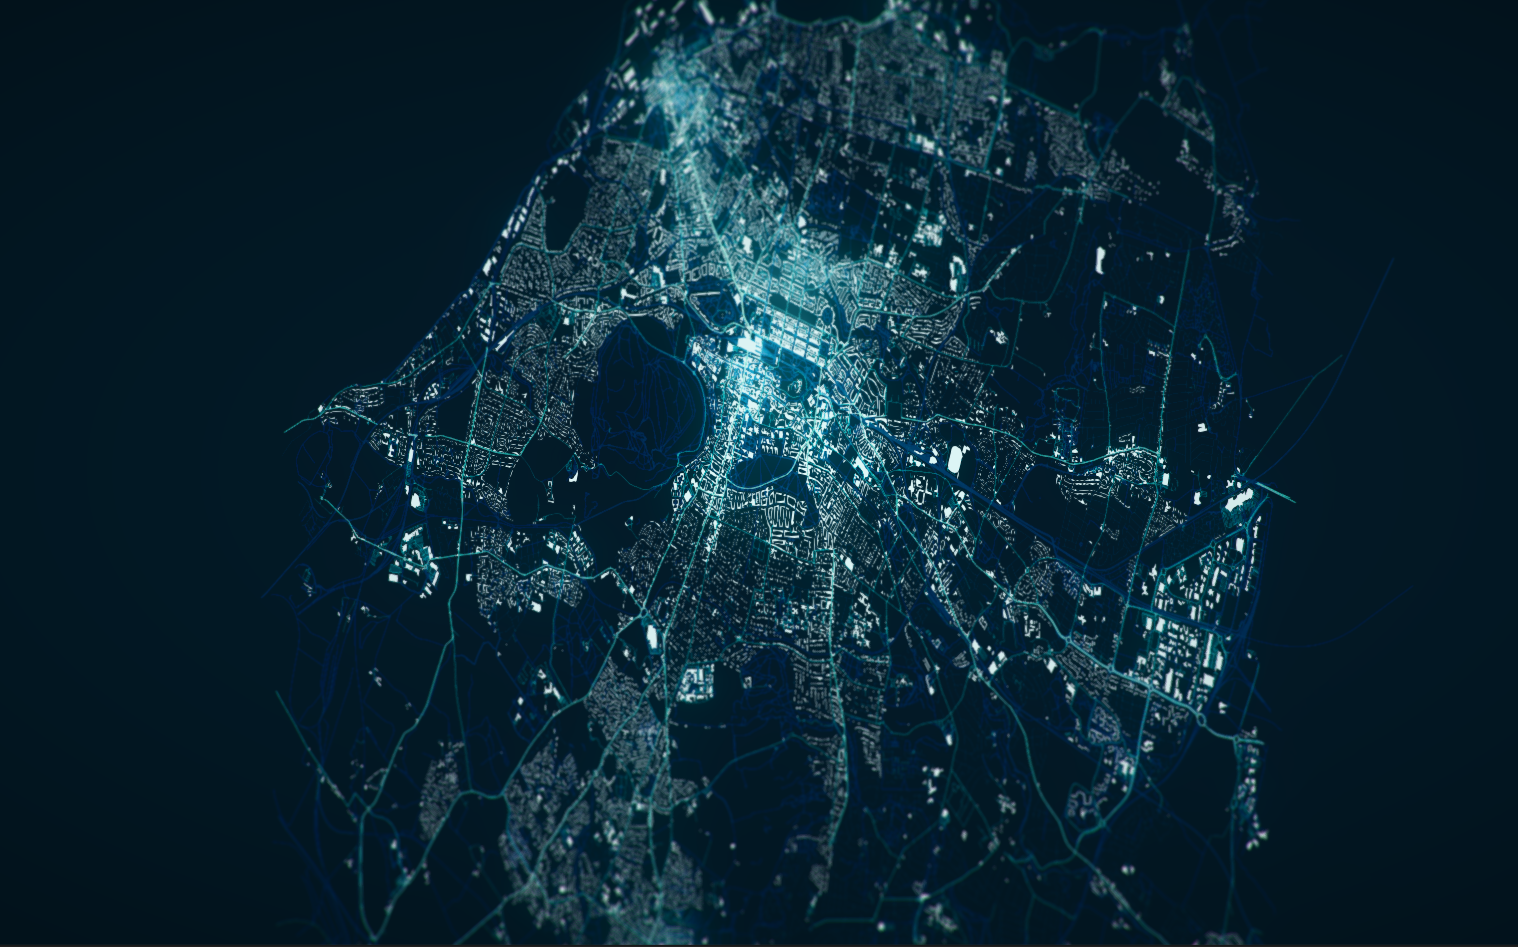 Open Street Map Data + Unity3D = Procedural Cities